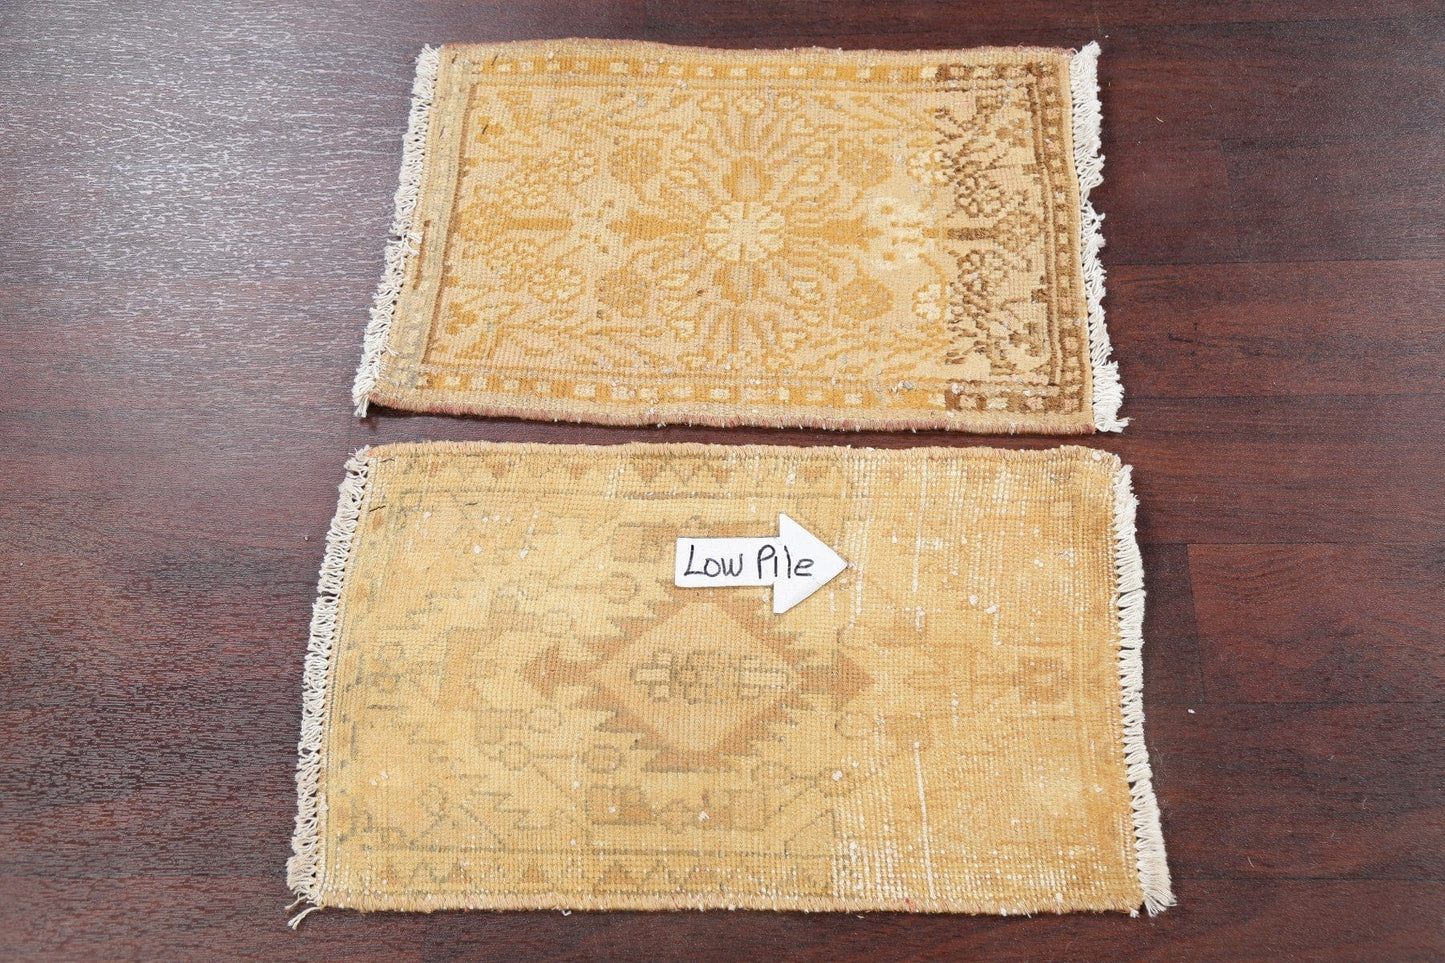 Set of 2 Vintage Hamedan Persian Rugs 1x2